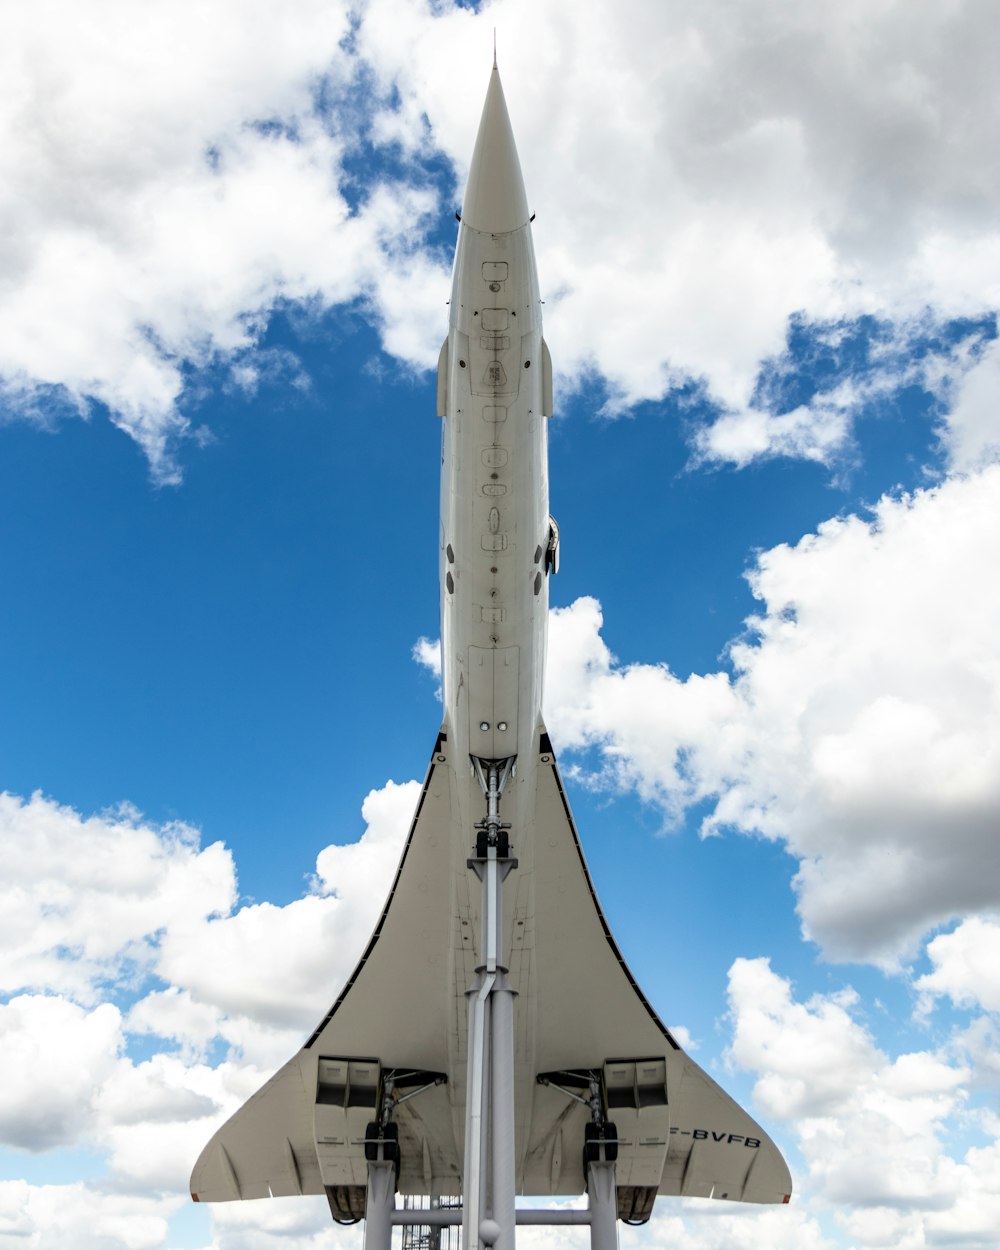 Un gran cohete blanco sentado encima de un soporte de metal